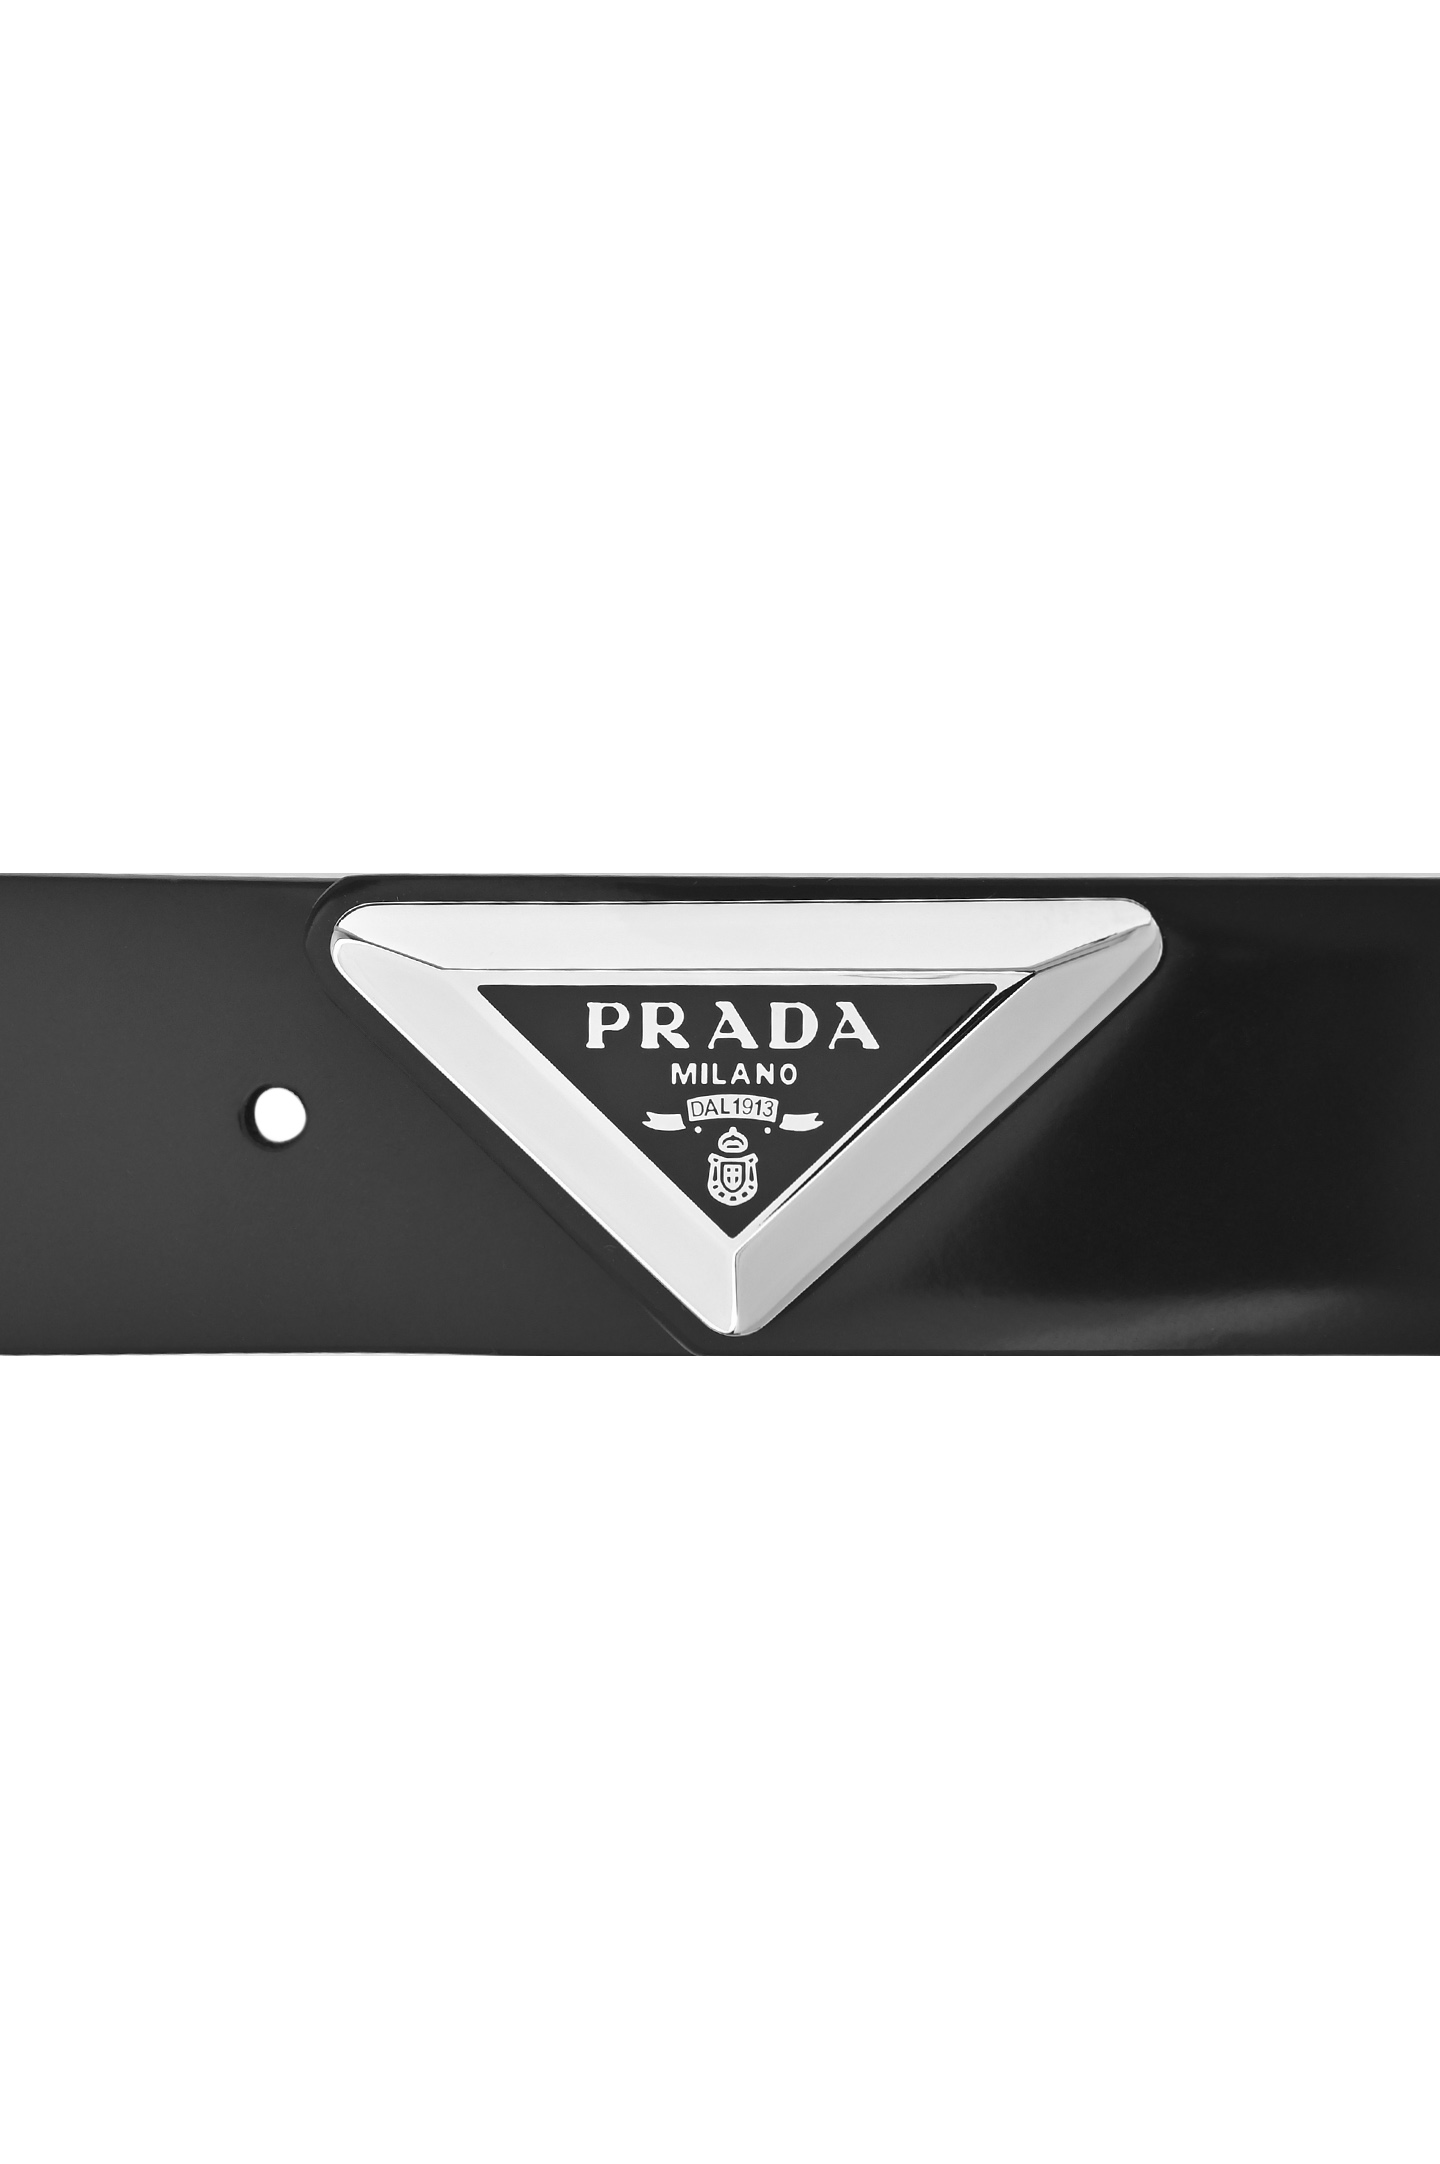 Ремень PRADA 2CM250 Z06, цвет: Черный, Мужской